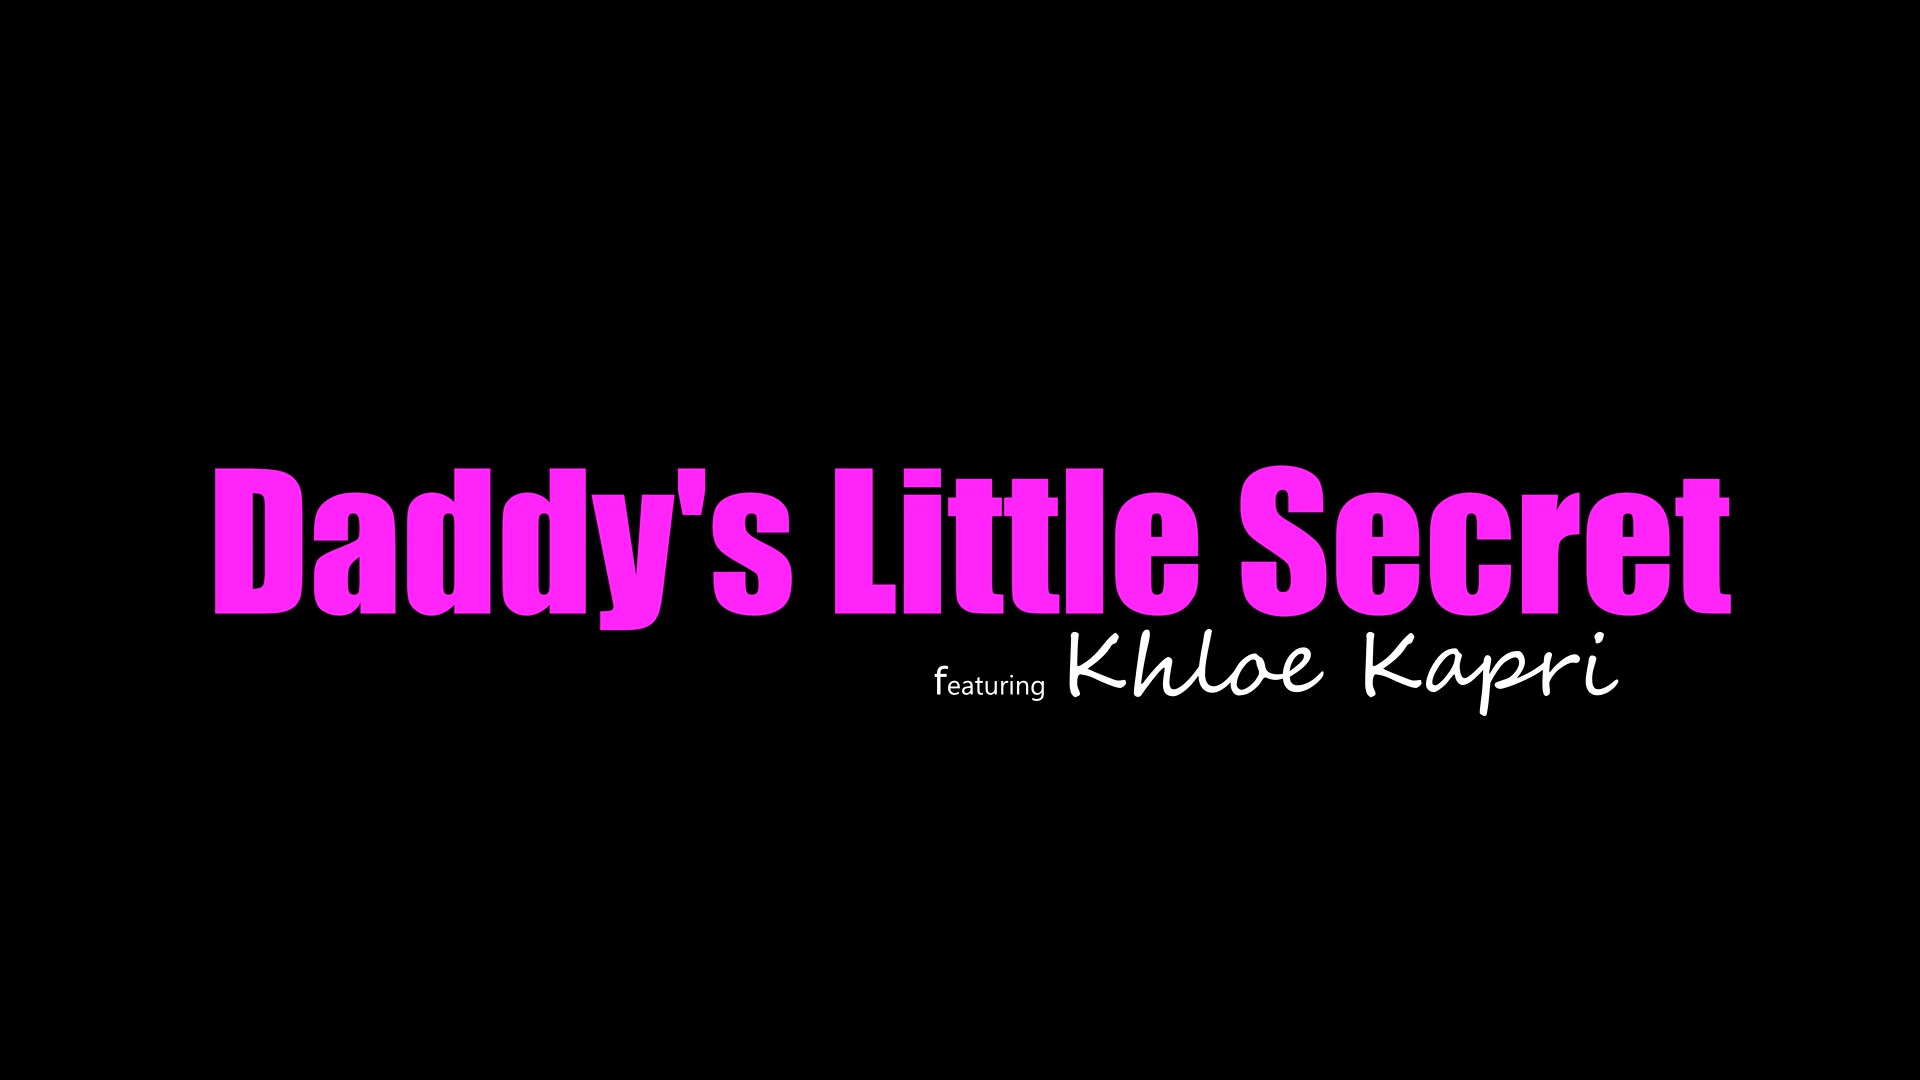 Khloe Kapri - Daddy's little secret